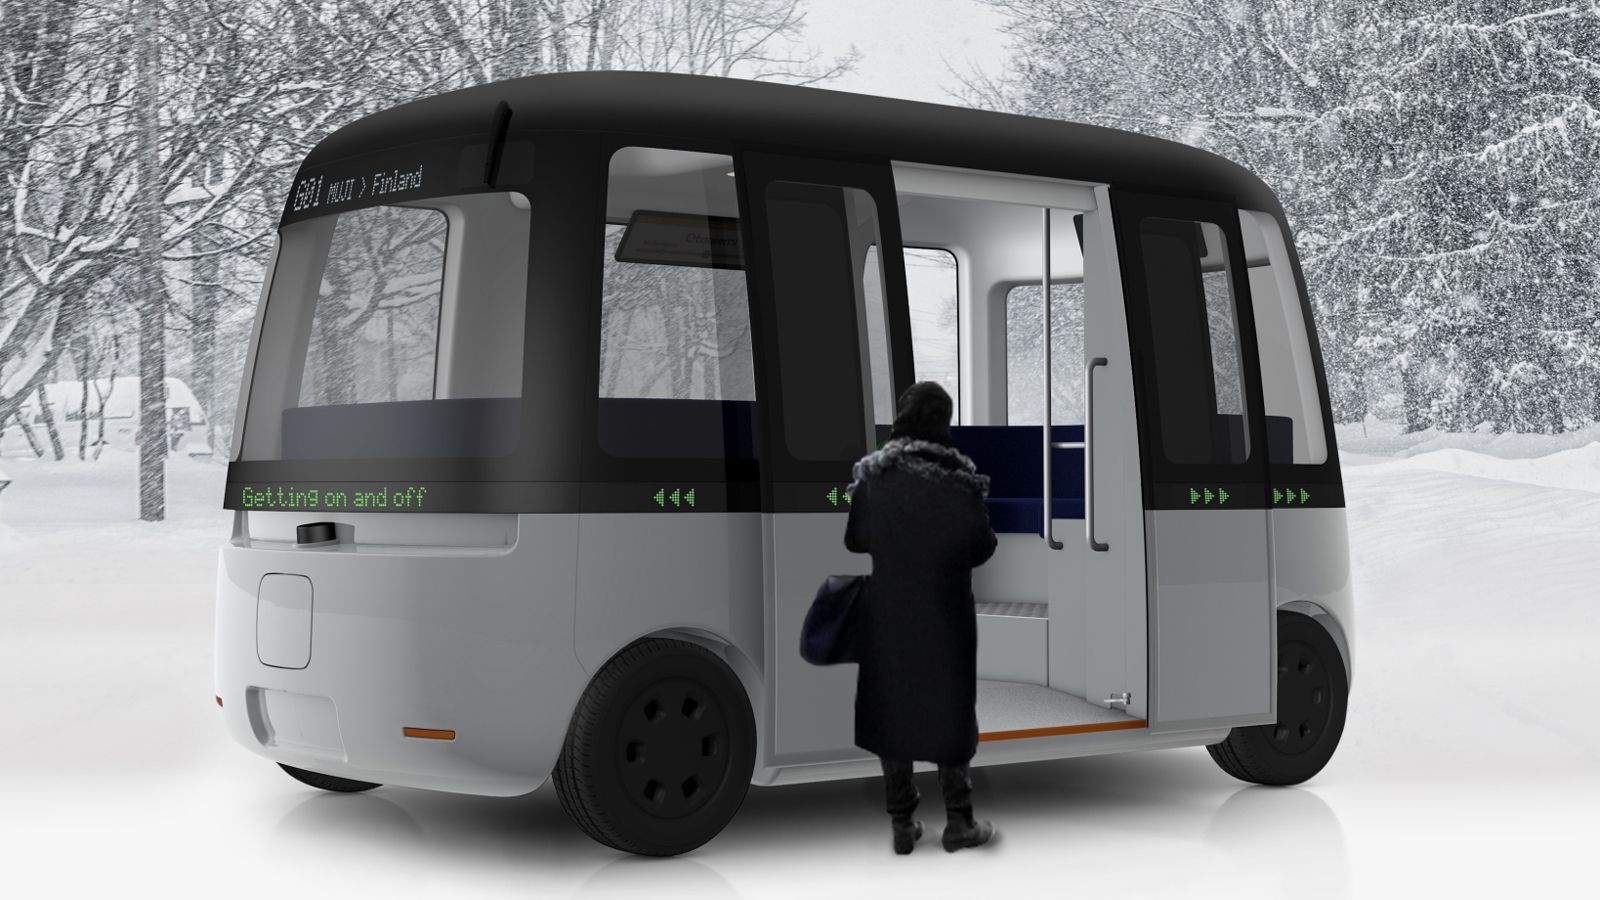 ｢無印良品×北欧×自動運転｣の意外な仕掛け 2020年実用化のバスにデザイン提供した理由 | 自動運転 | 東洋経済オンライン